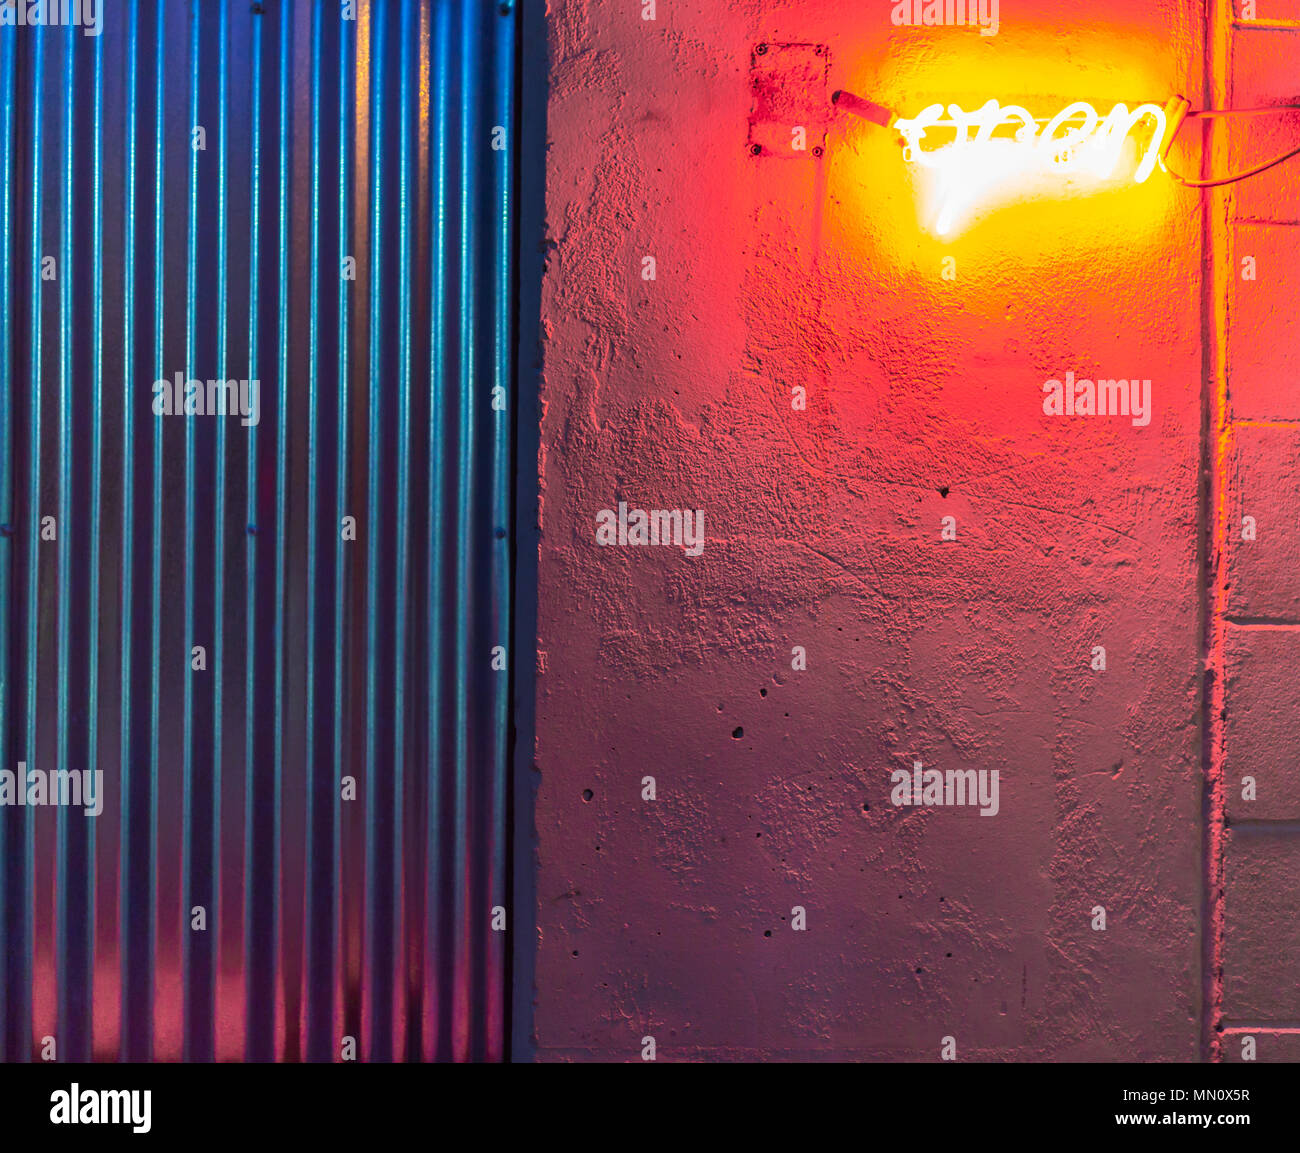 Neon Bar Schild Stadt Farbe Rot Stock Vektor Art und mehr Bilder